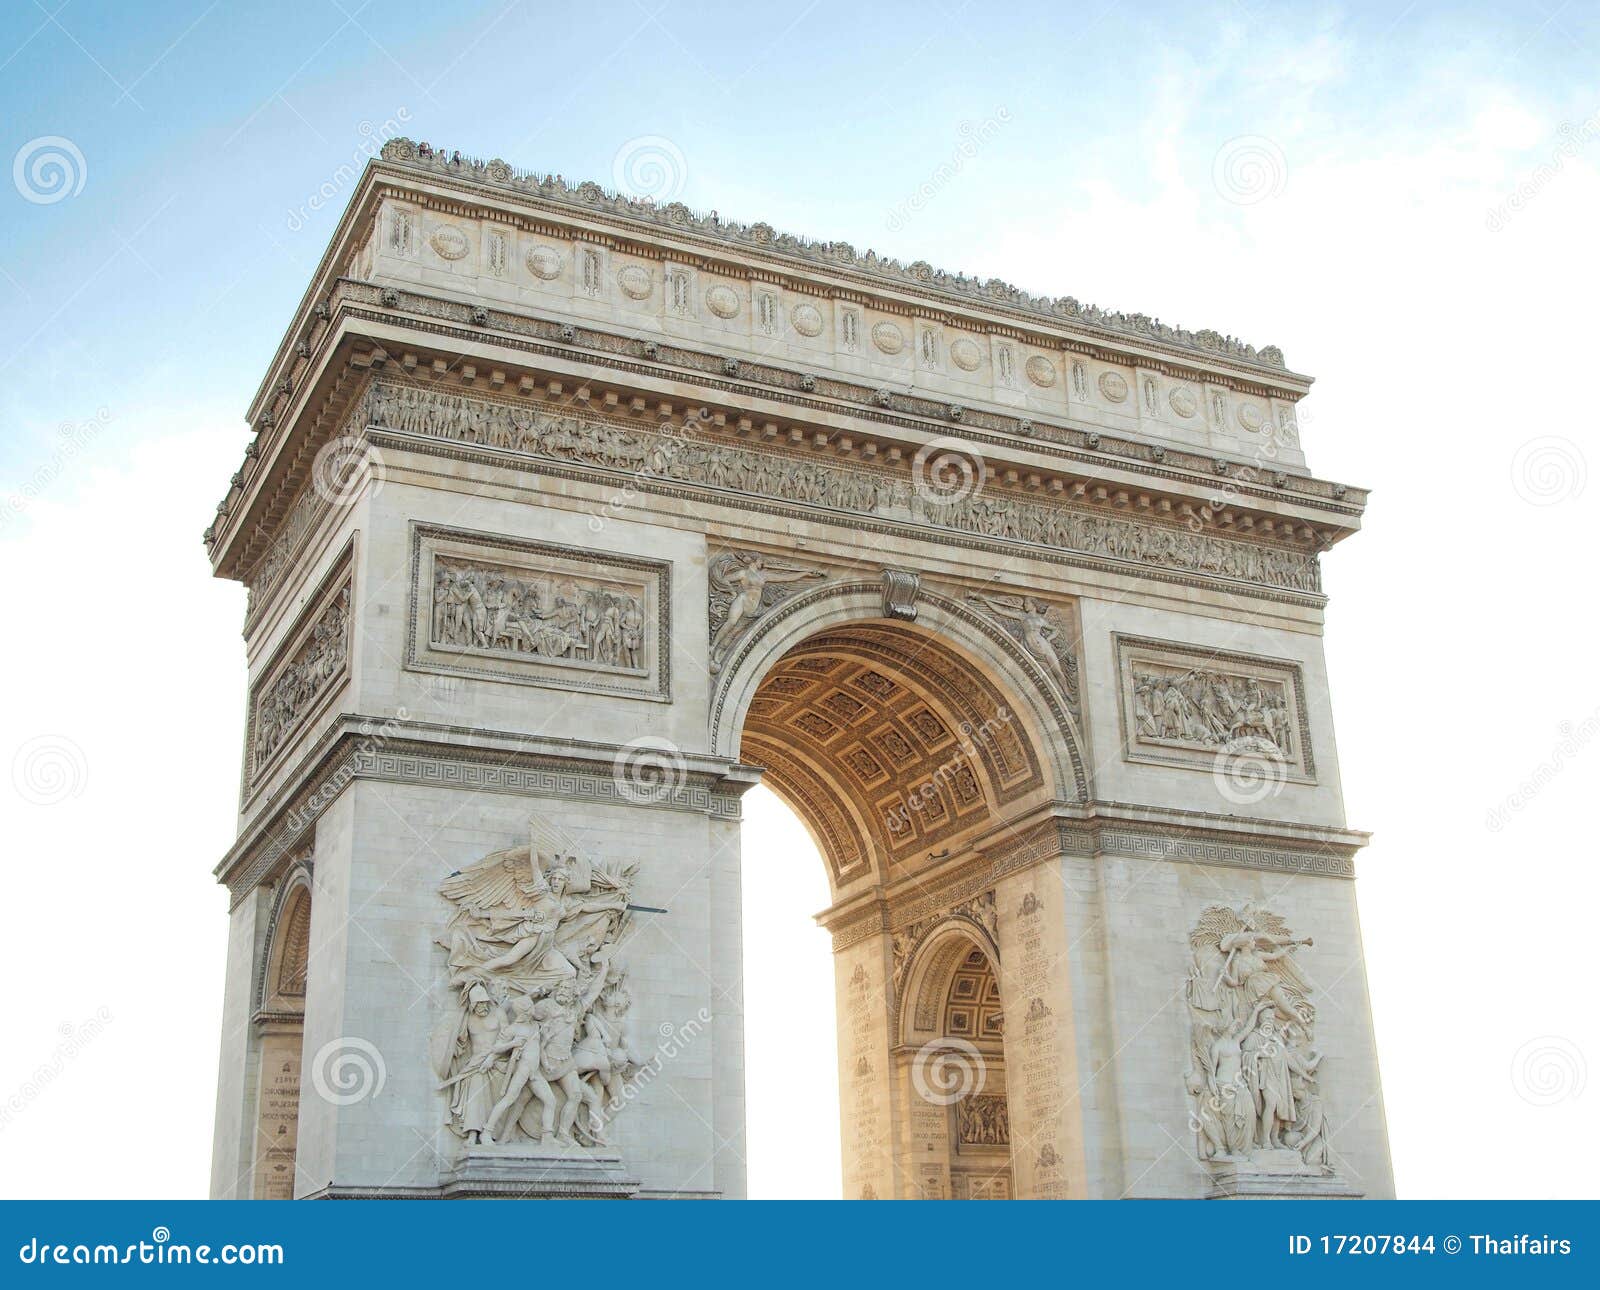 triumphal arch , napoleon bonaparte paris france